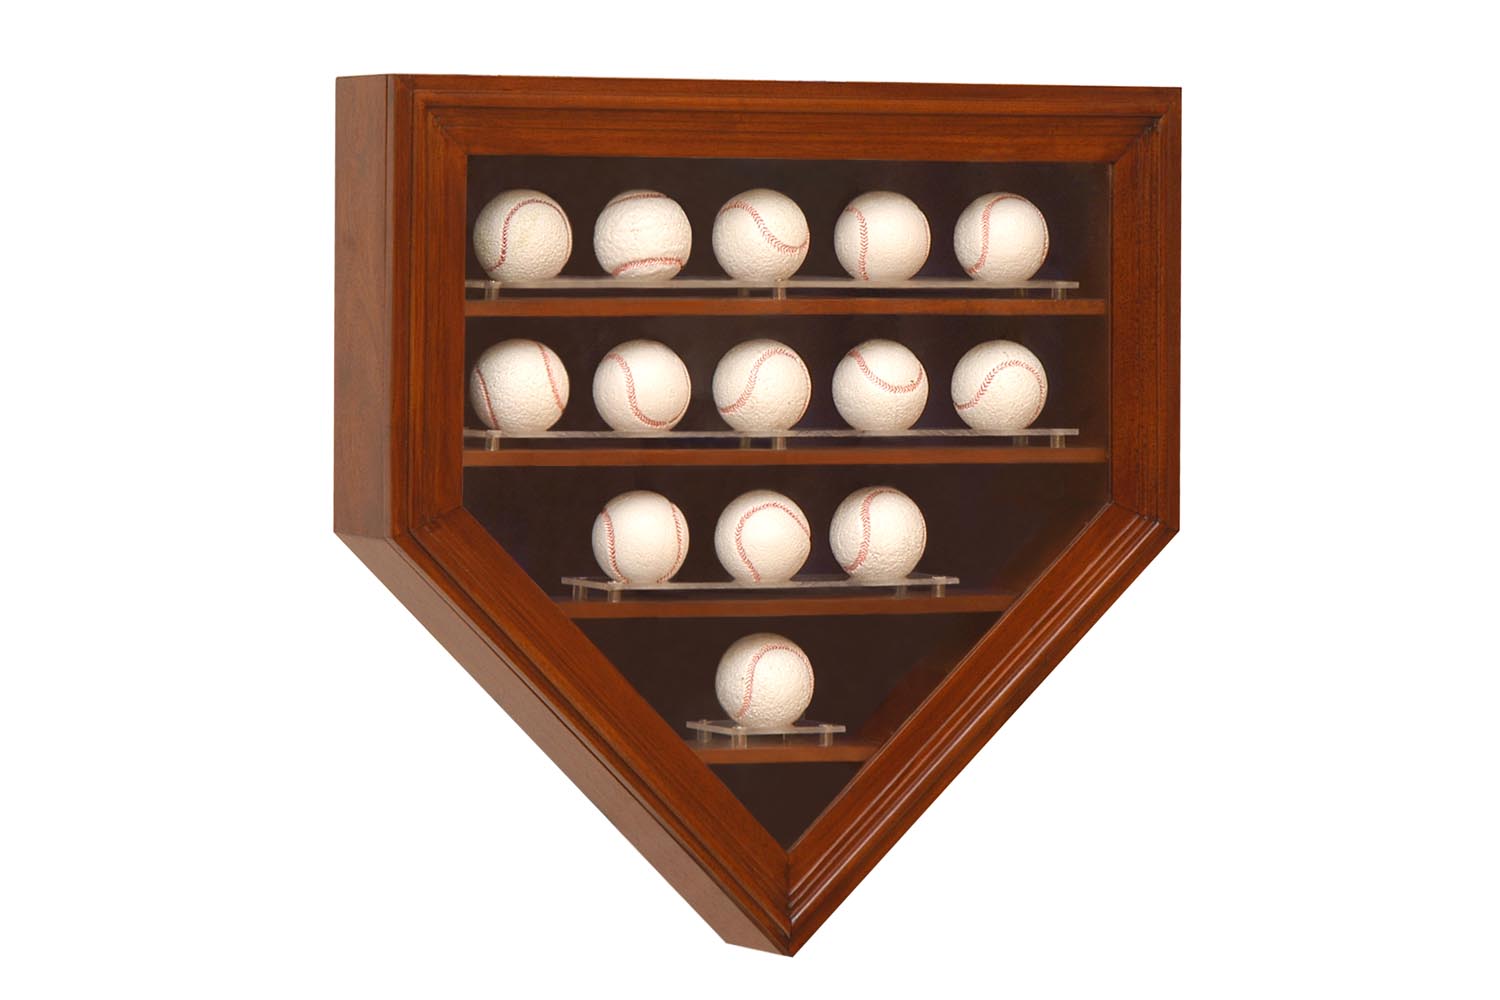 DIY baseball display case plans PDF Download